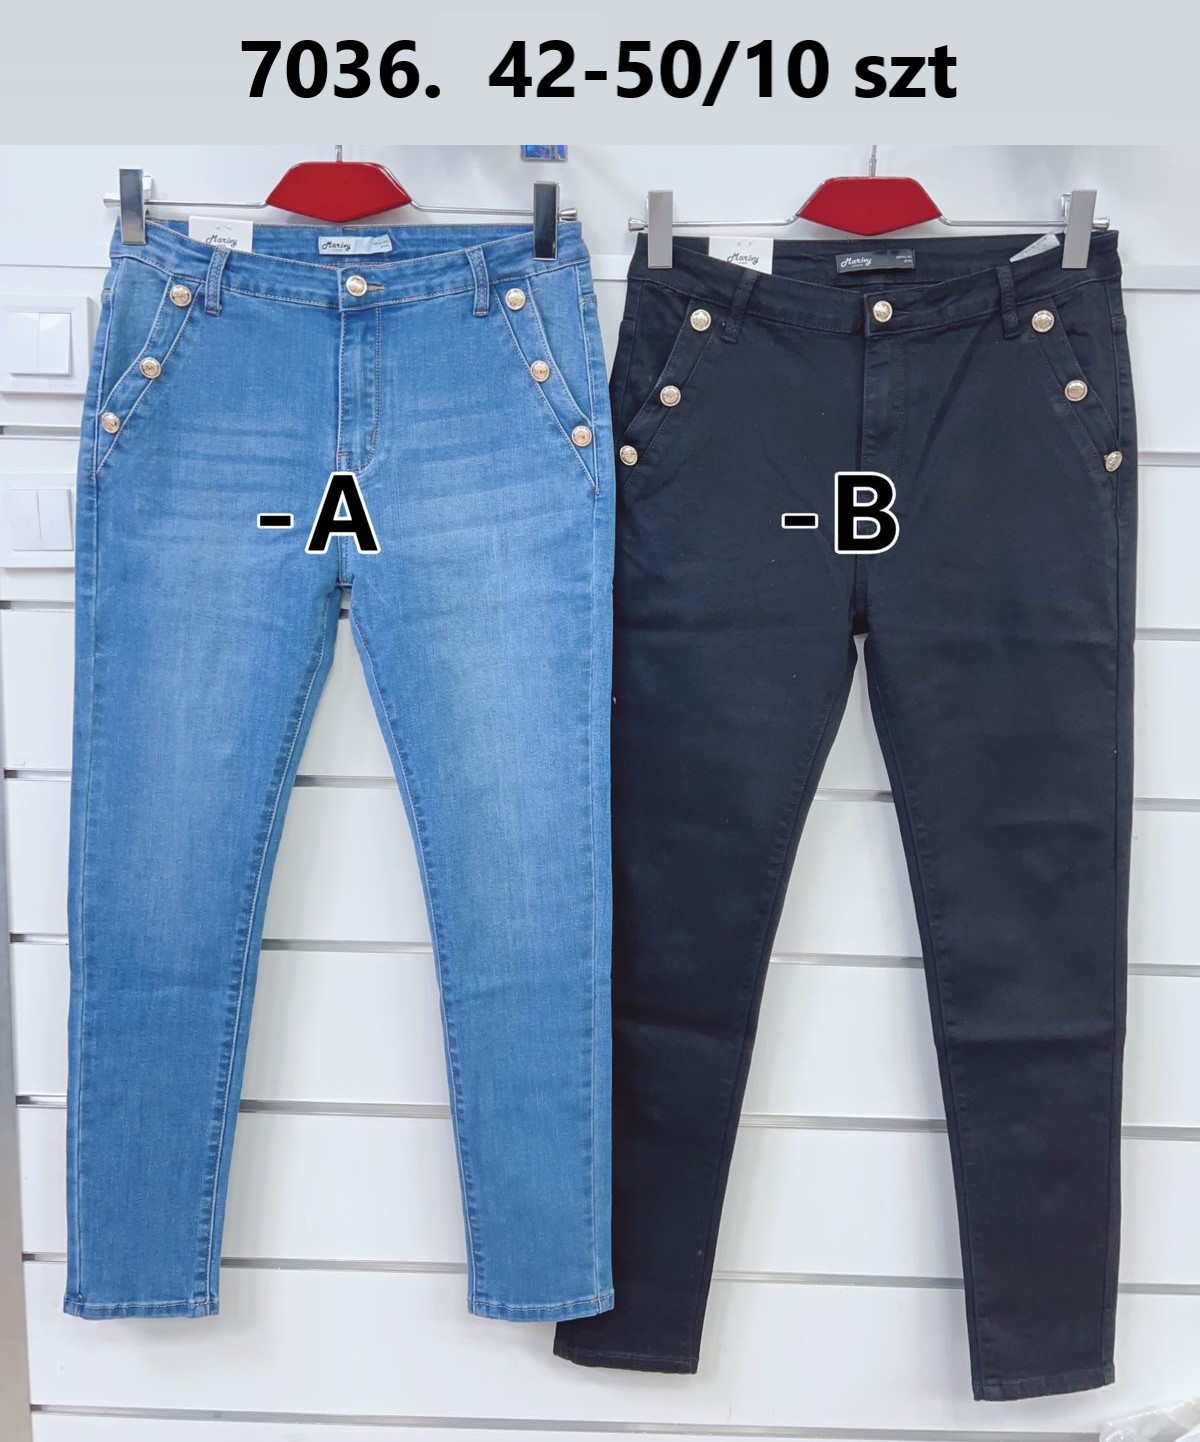 Spodnie  damskie jeans Roz  42-50.  1 kolor . Paczka 10szt